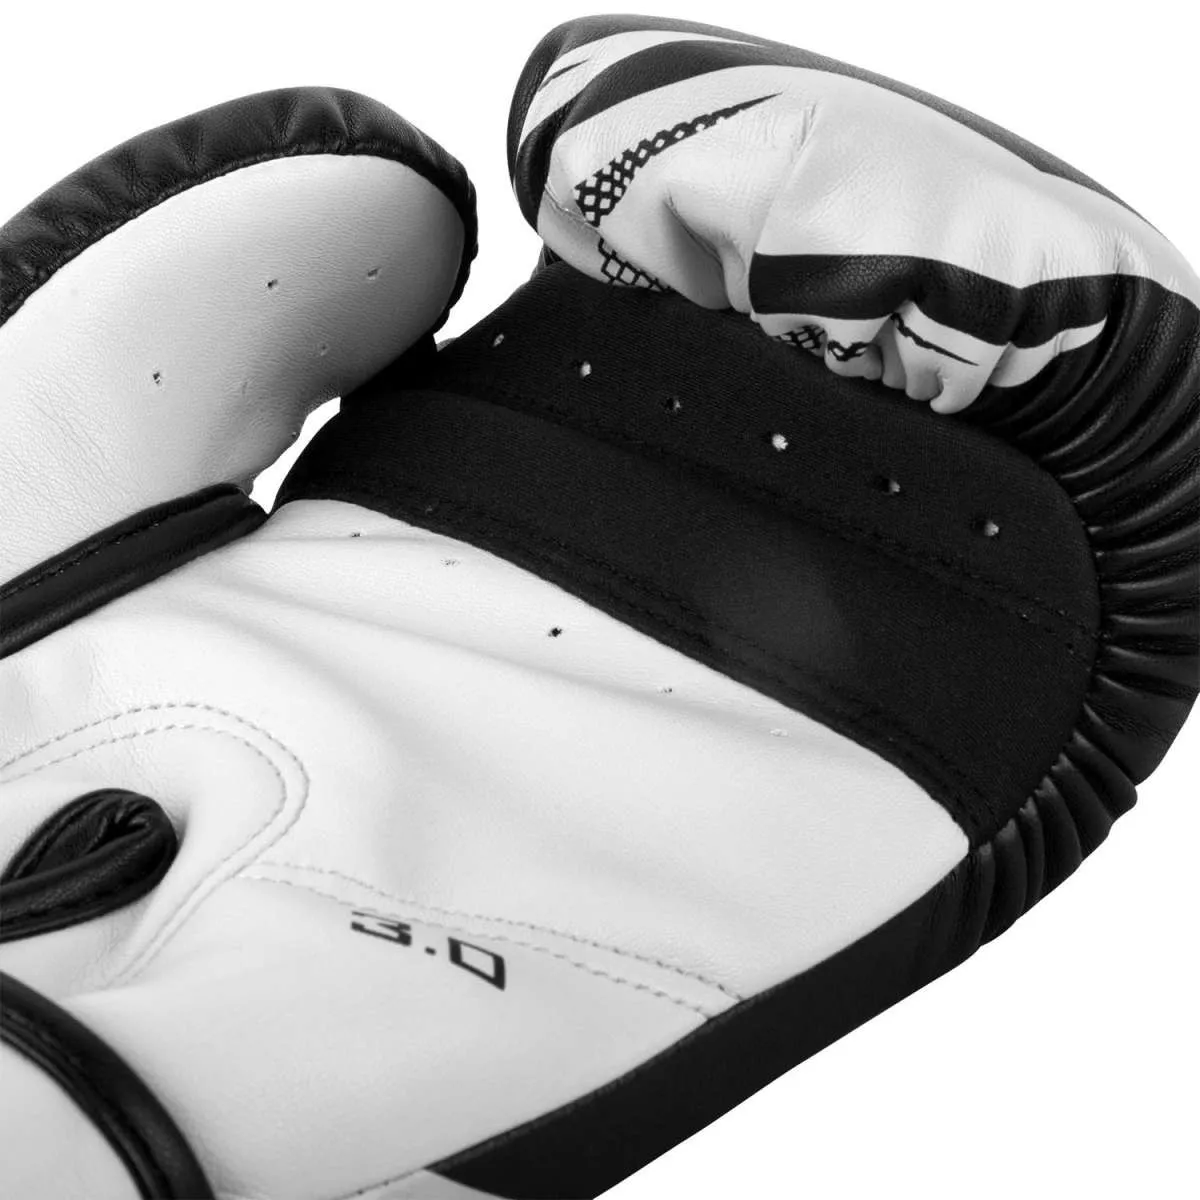 Venum Challenger 3.0 boxing gloves black/white